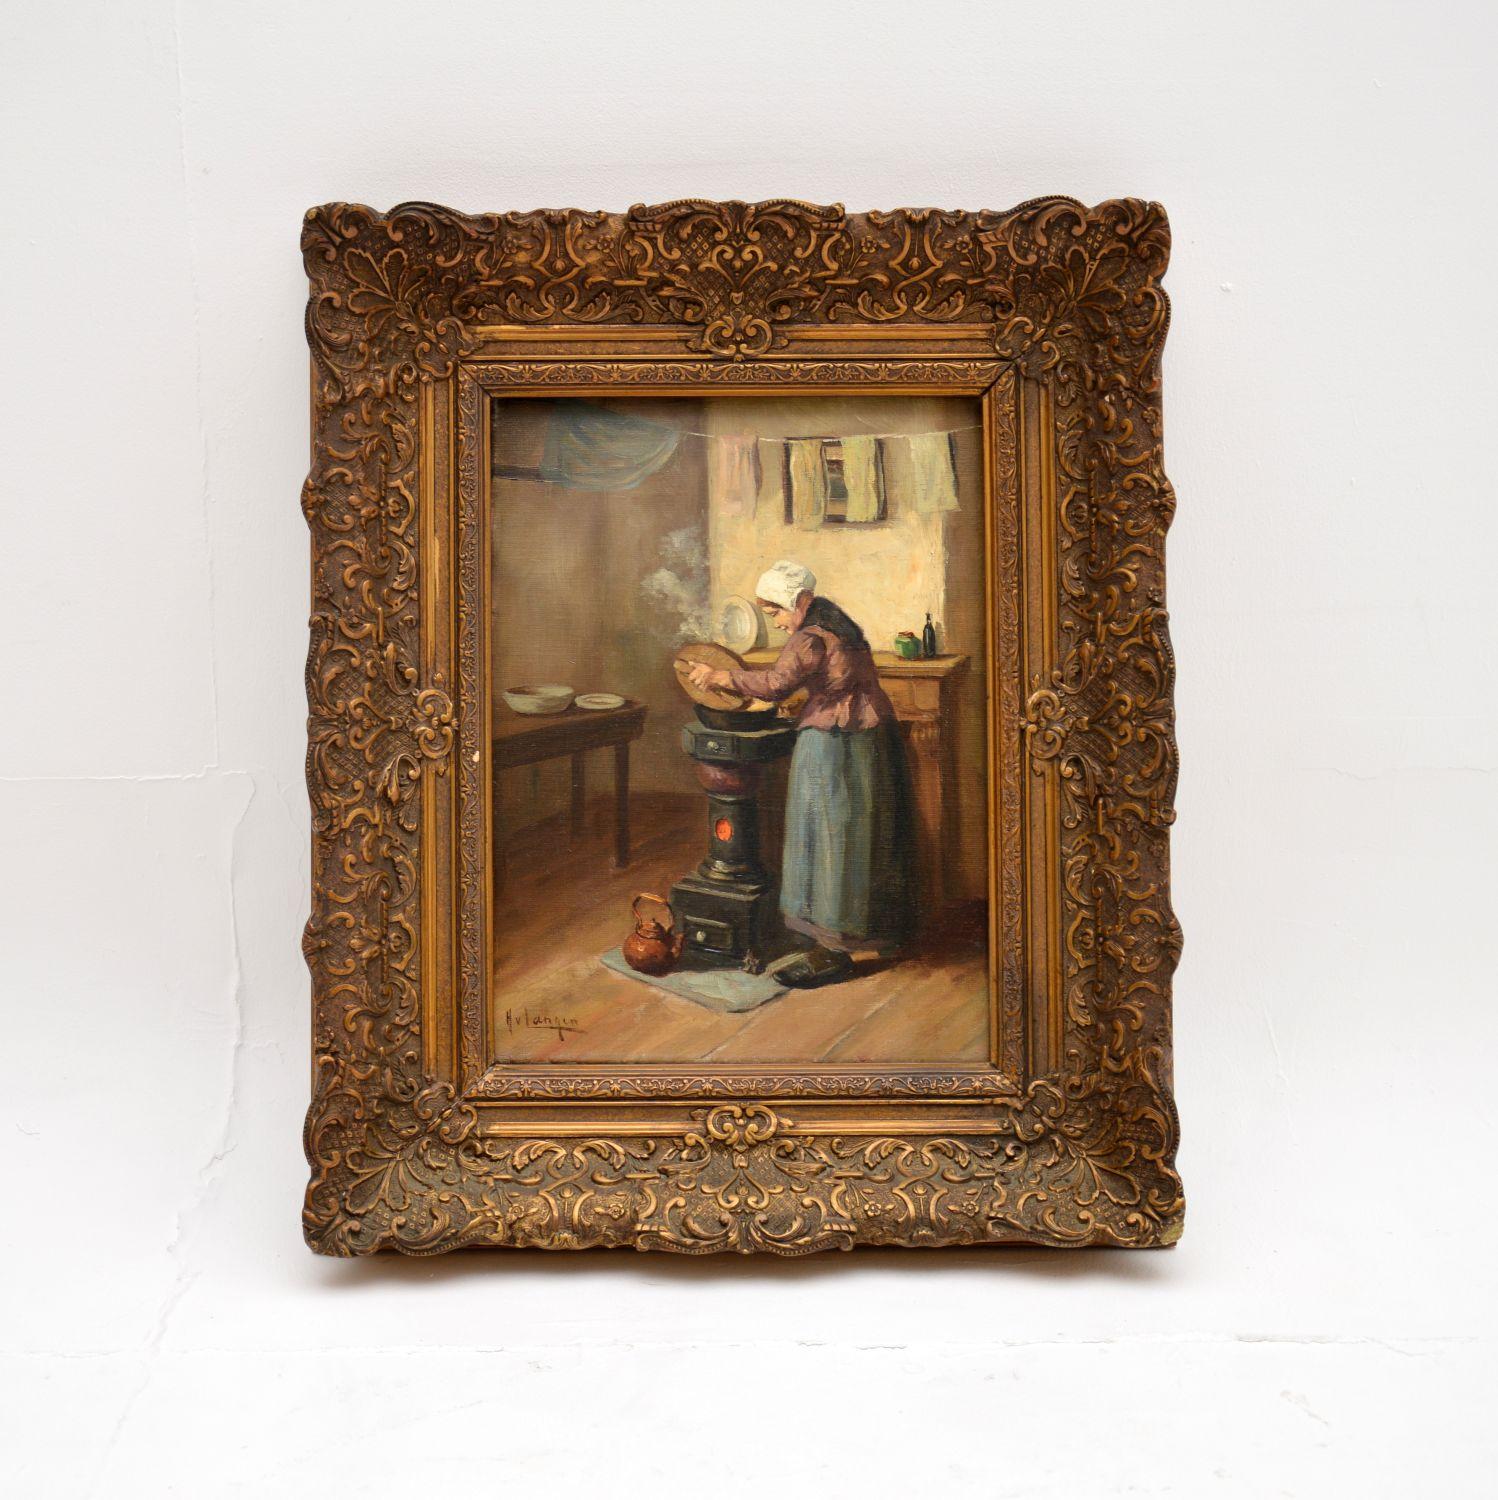 Ein schönes antikes Ölgemälde des bekannten niederländischen Künstlers Hendrikus Johannes Franciscus van Langen. Sie stammt aus dem frühen zwanzigsten Jahrhundert um 1900-1920.

Es stellt eine kochende Bäuerin dar, ist wunderschön ausgeführt und in